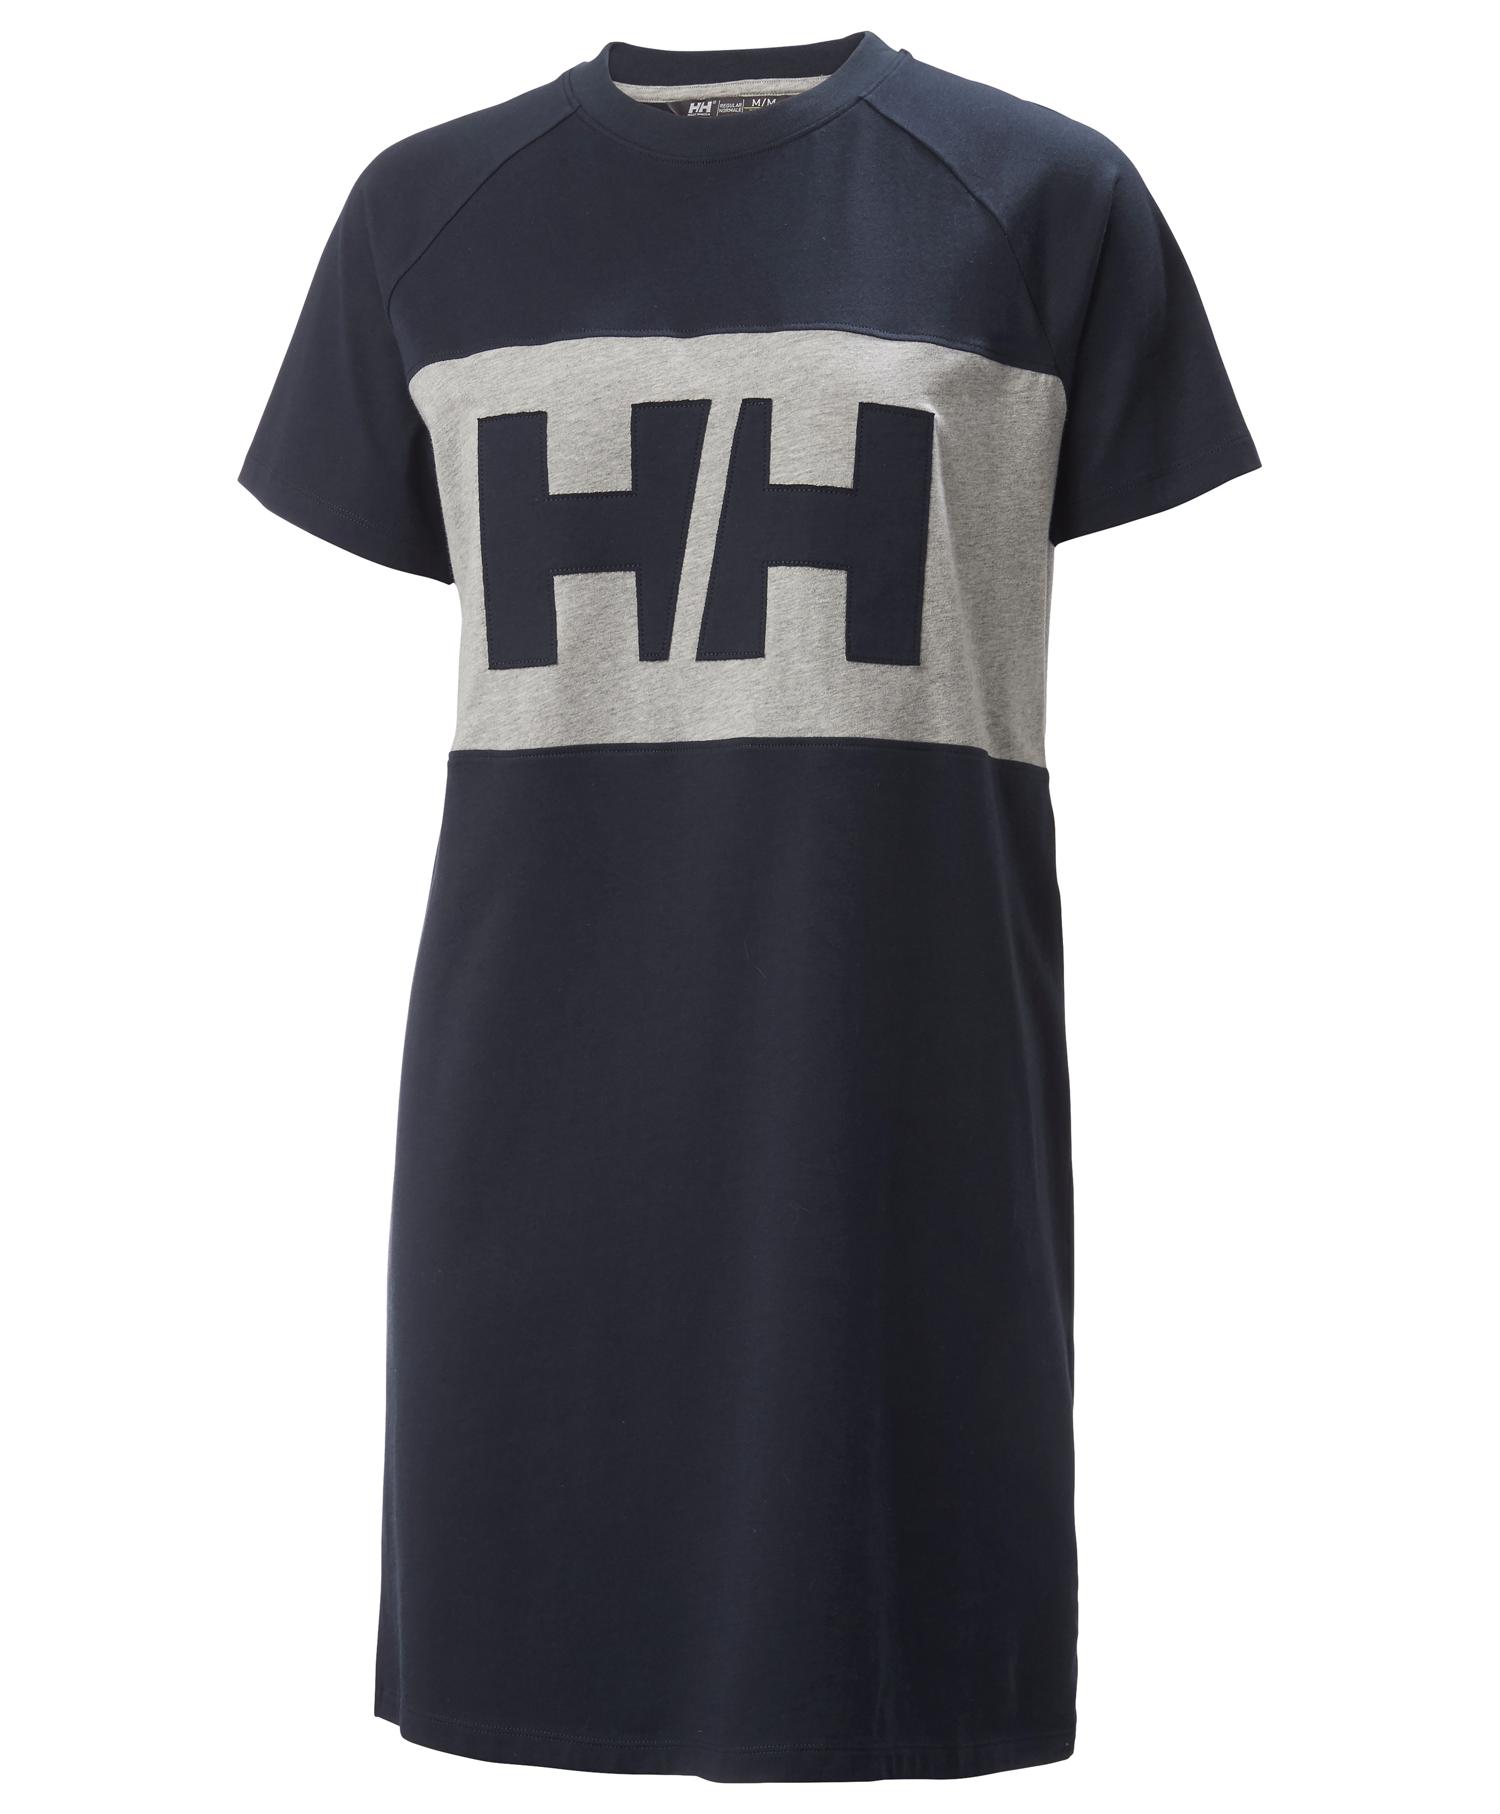 Helly Hansen Active T-shirt Dress